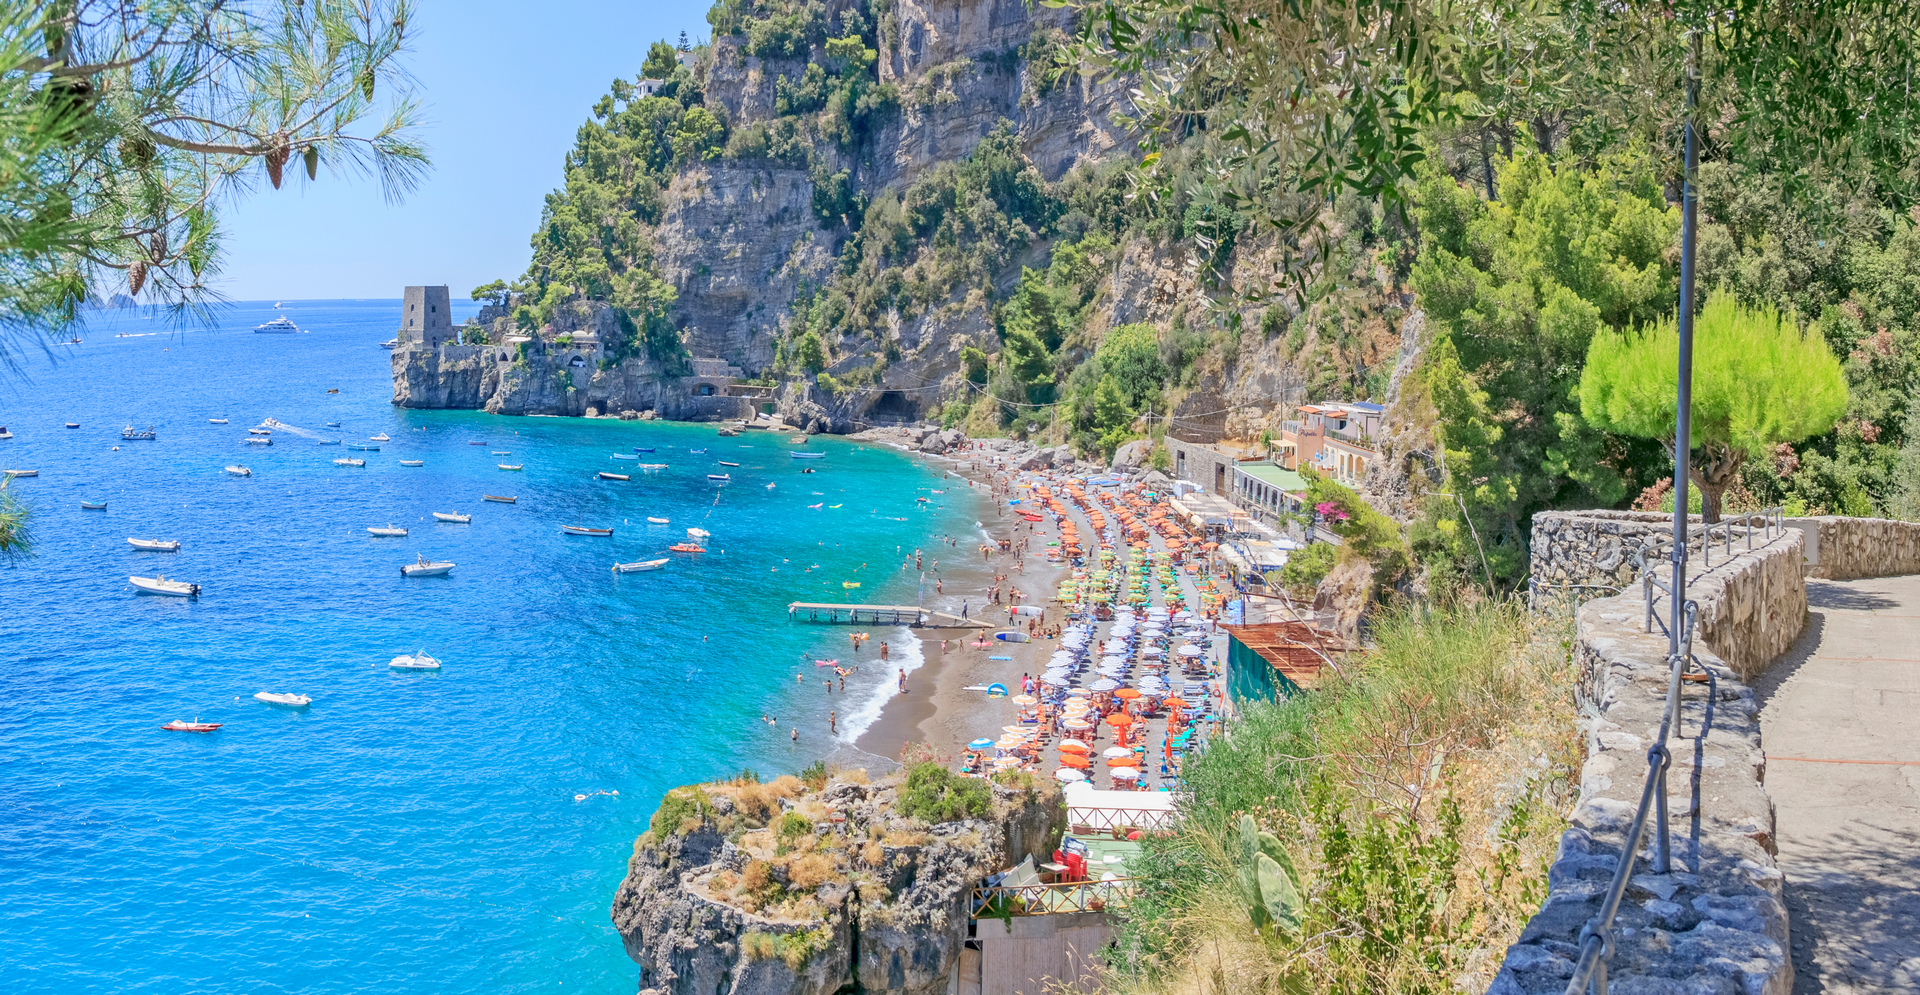 Spiaggia di Fornillo - šnorlchlování u Amalfi